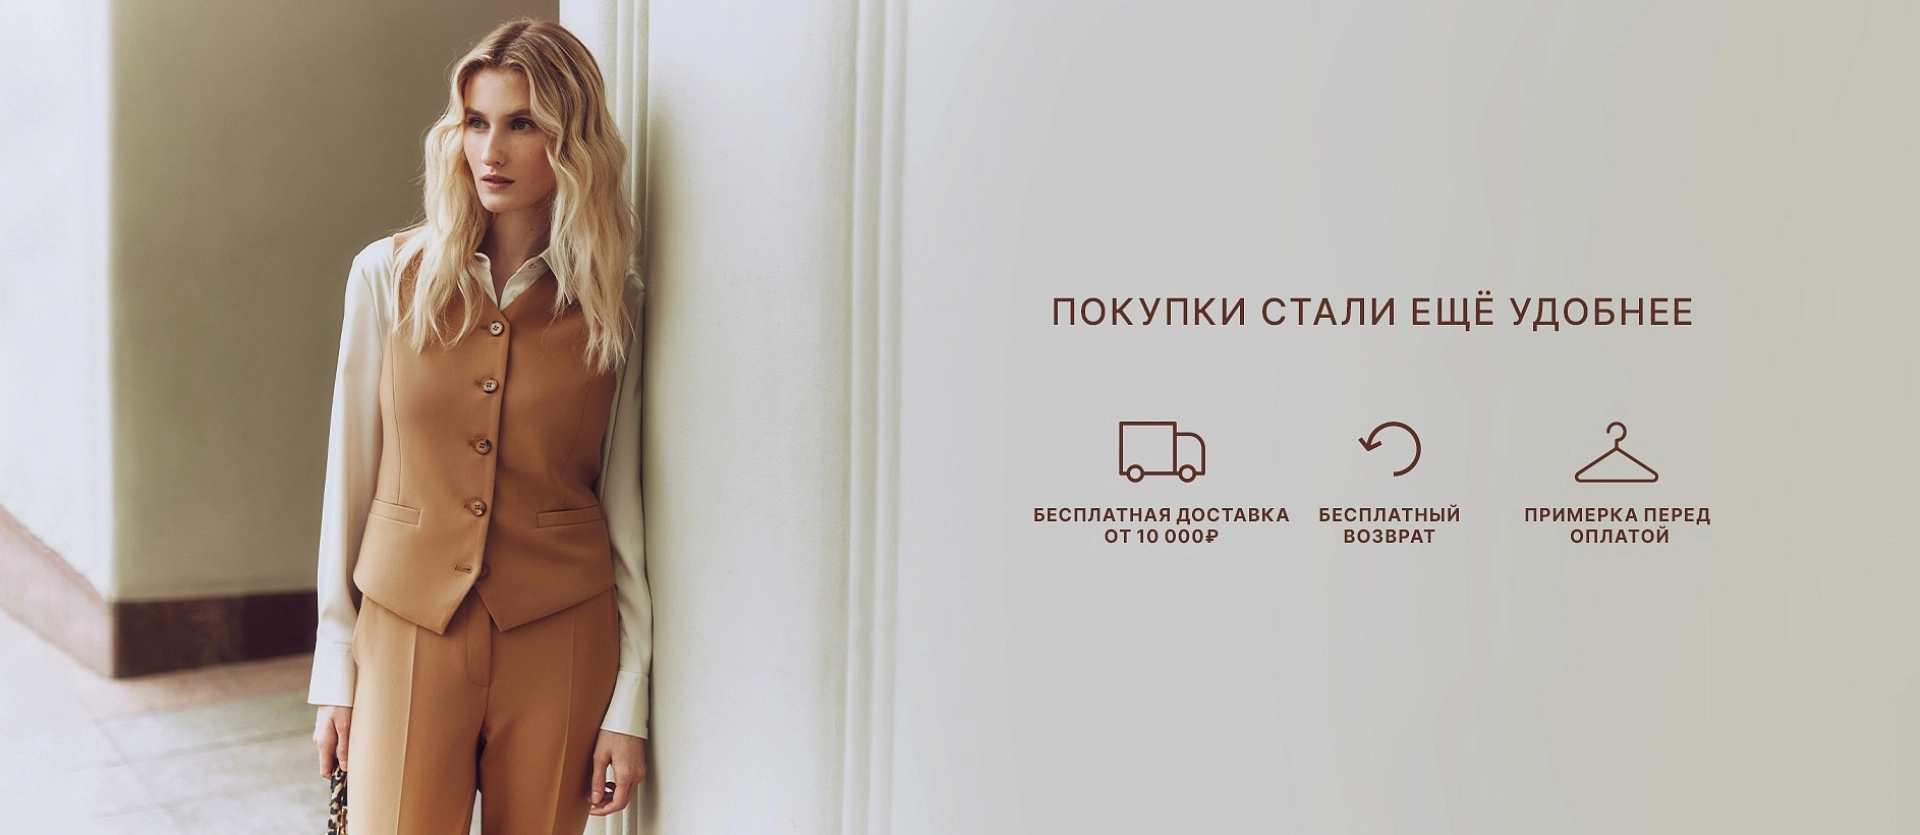 ModaMe.ru – интернет магазин женской одежды